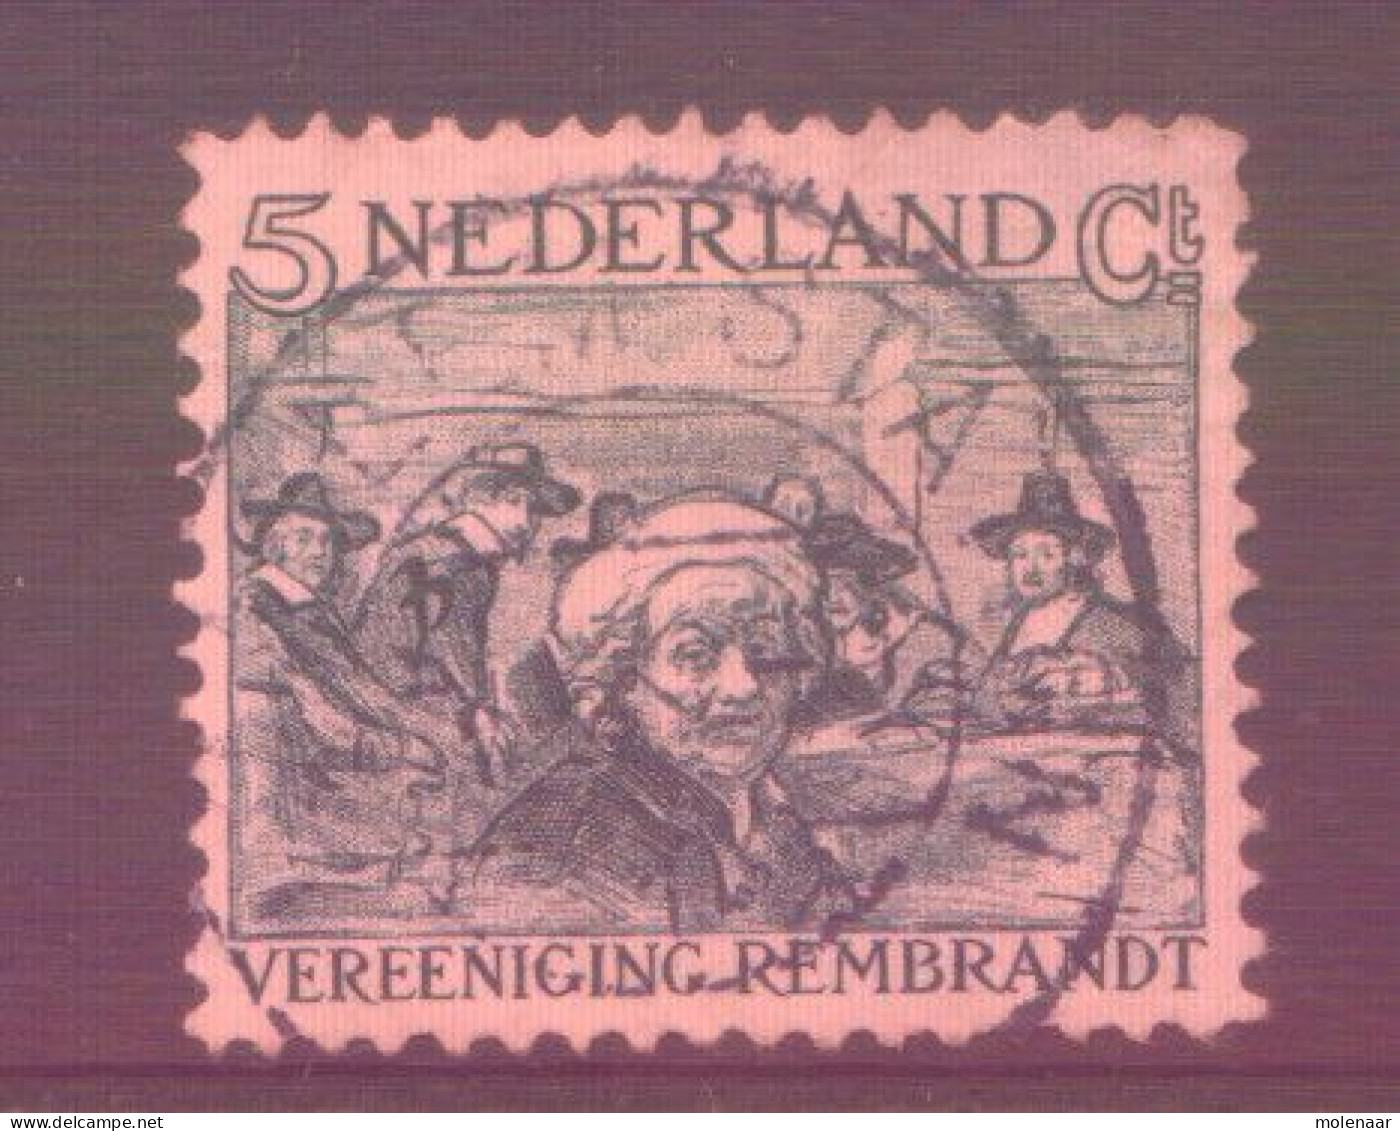 Postzegels > Europa > Nederland > Periode 1891-1948 (Wilhelmina) > 1891-1909 > 229 Gebruikt (11761) - Oblitérés